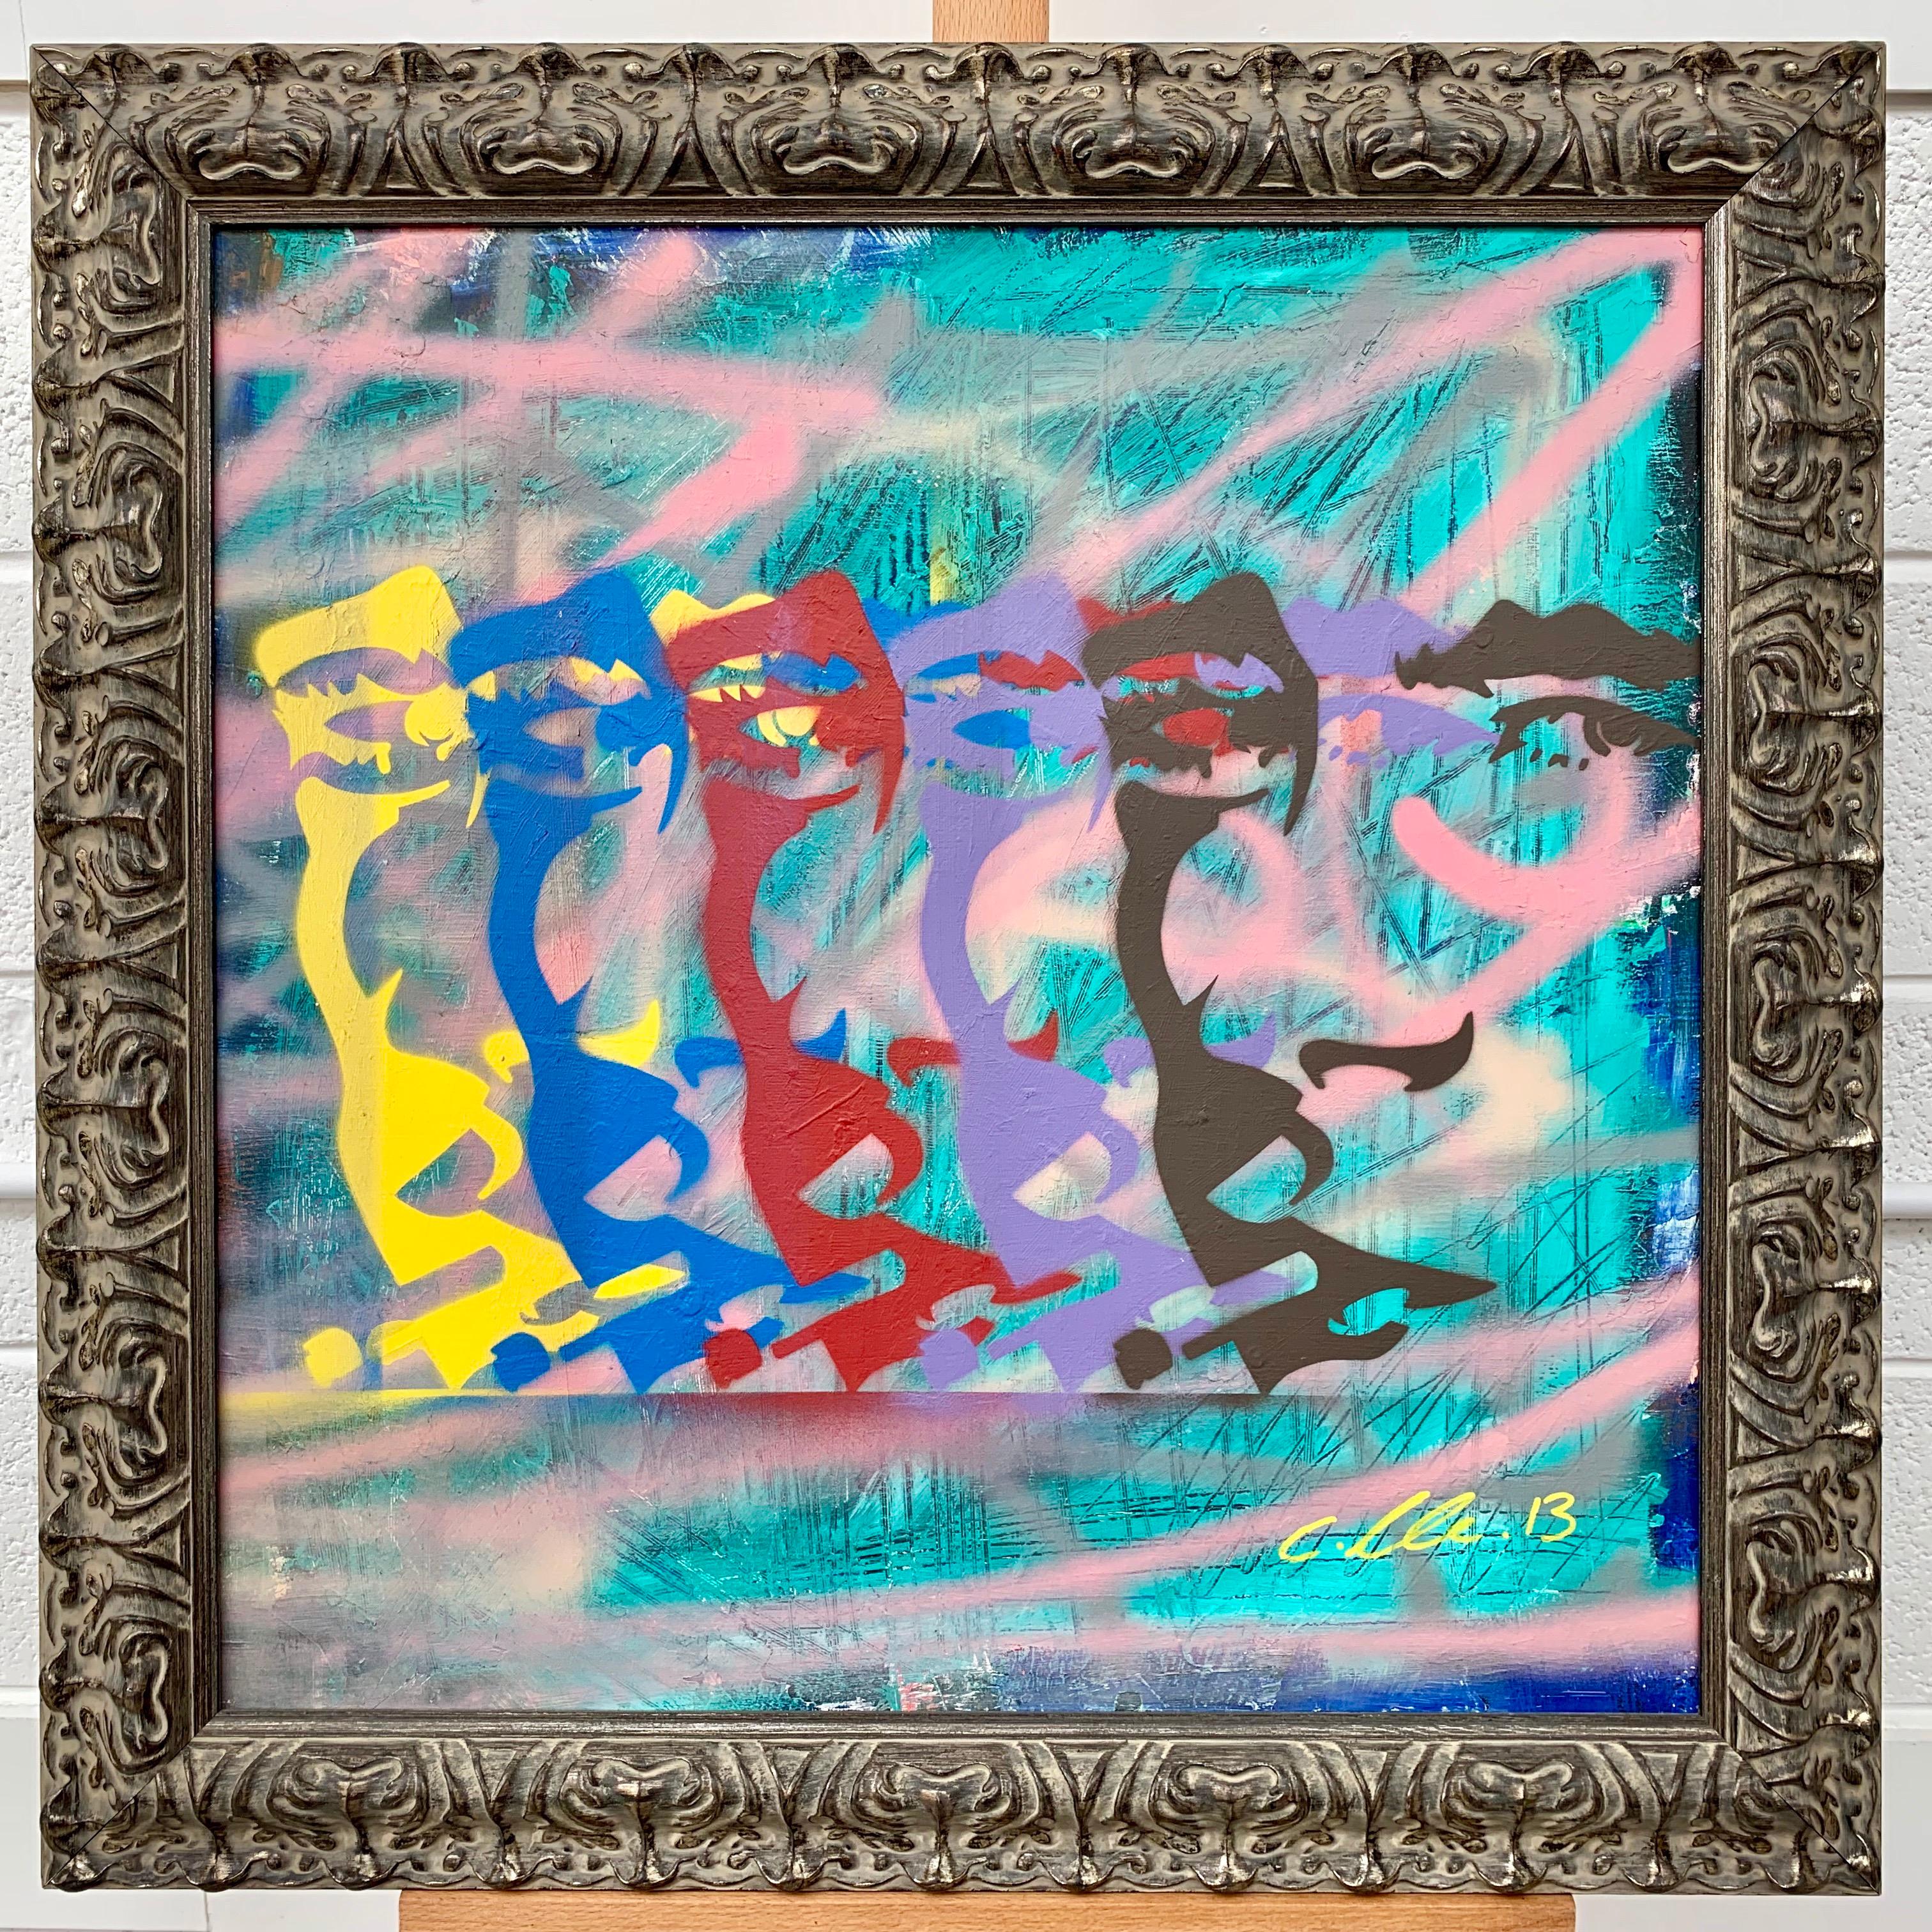 Portrait de James Dean fumant la cigarette Pop Art par l'artiste britannique de graffiti urbain, Chris Pegg. Chris Pegg est un Artiste de rue autodidacte qui produit des œuvres d'art avec un commentaire social fort.  

Son travail s'inspire